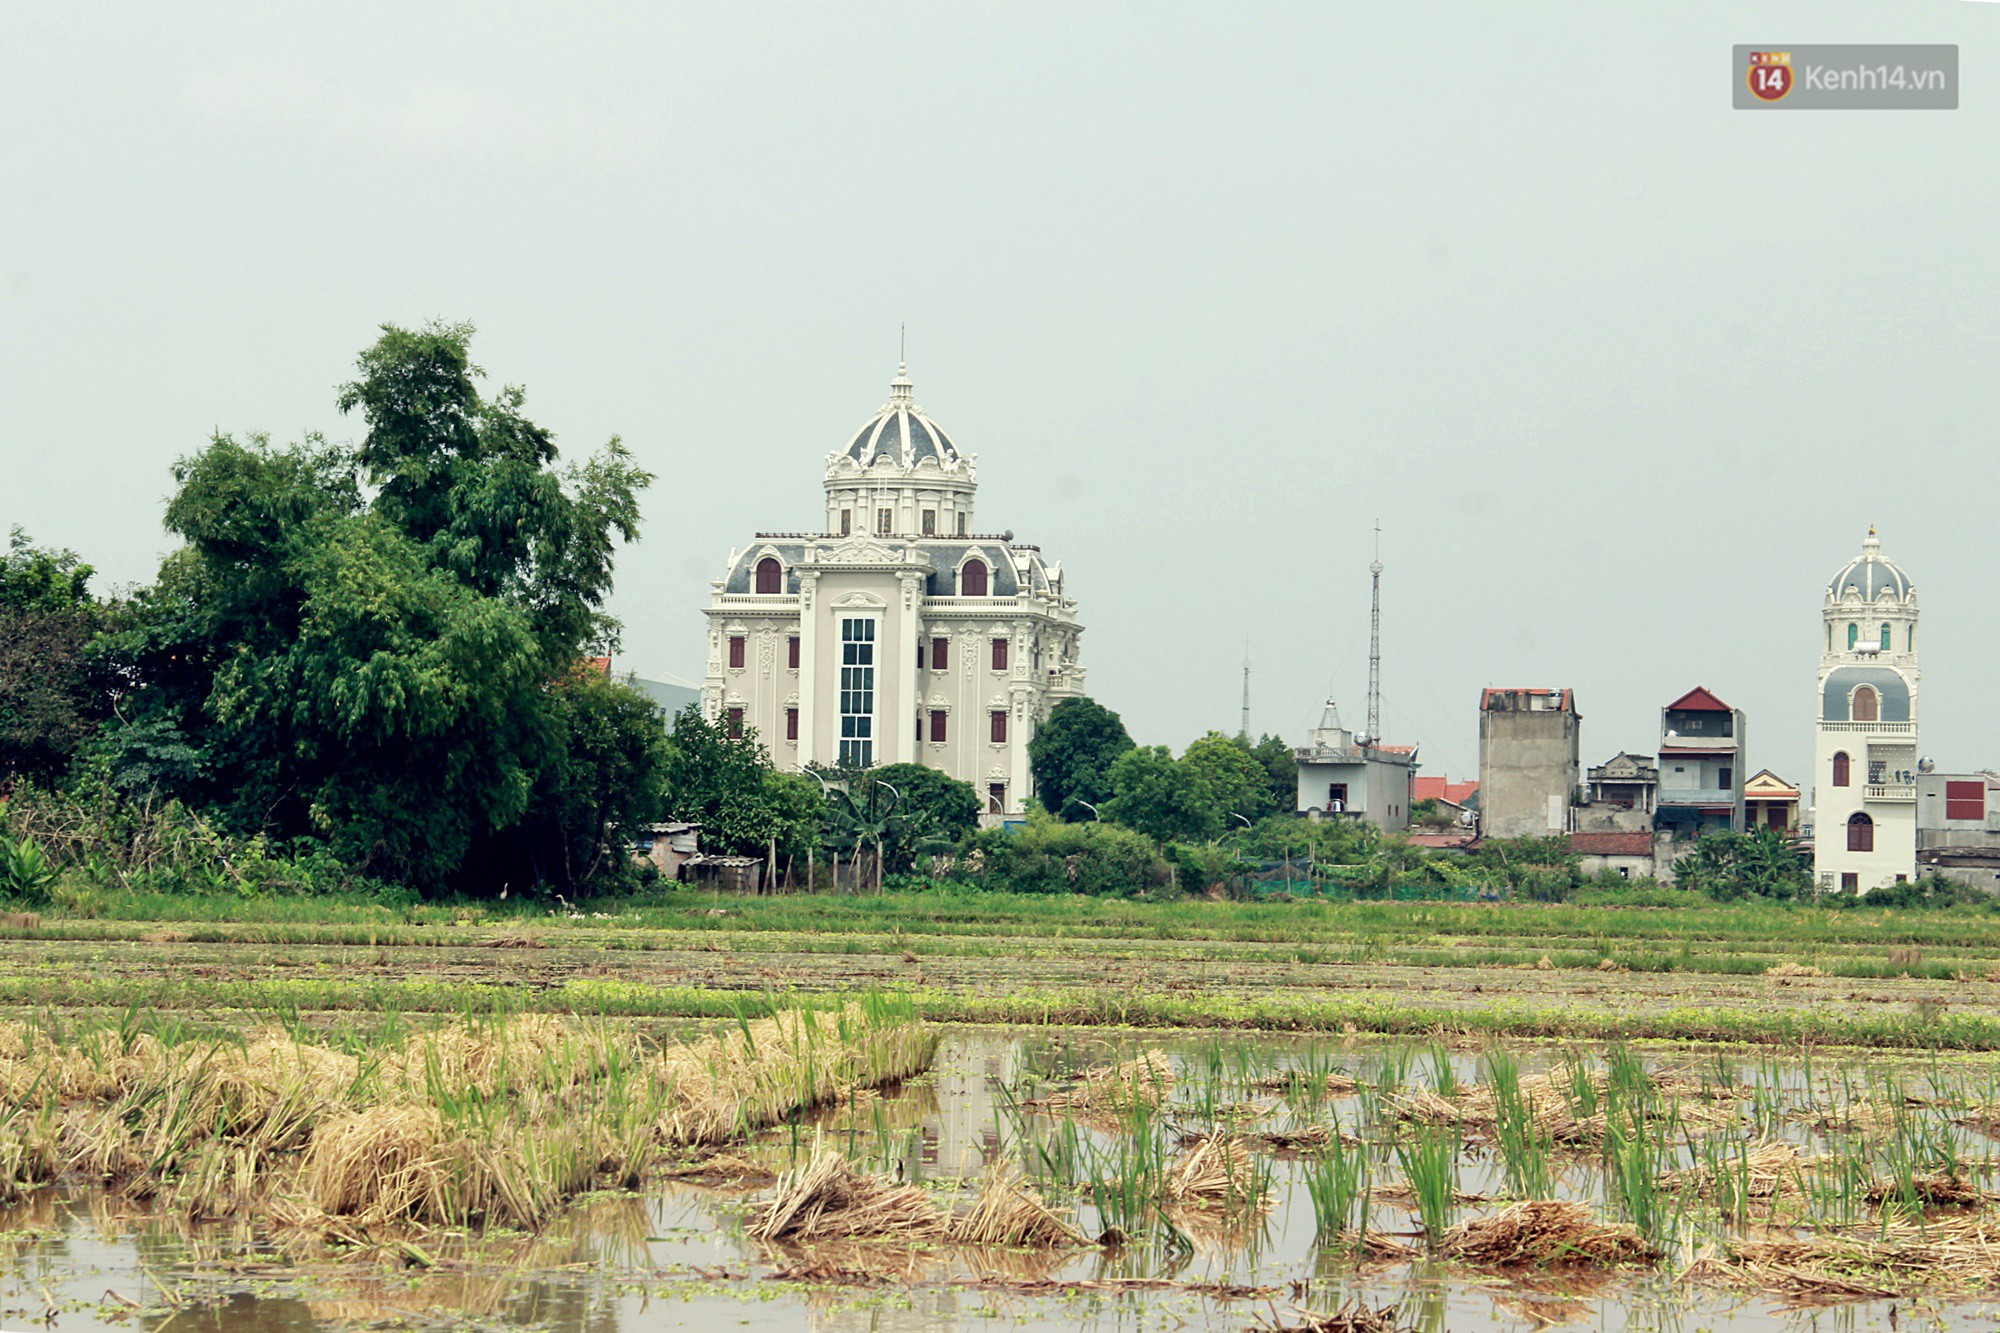 Về làng tỷ phú Nam Định chiêm ngưỡng những tòa lâu đài nguy nga tráng lệ theo phong cách Châu Âu - Ảnh 1.